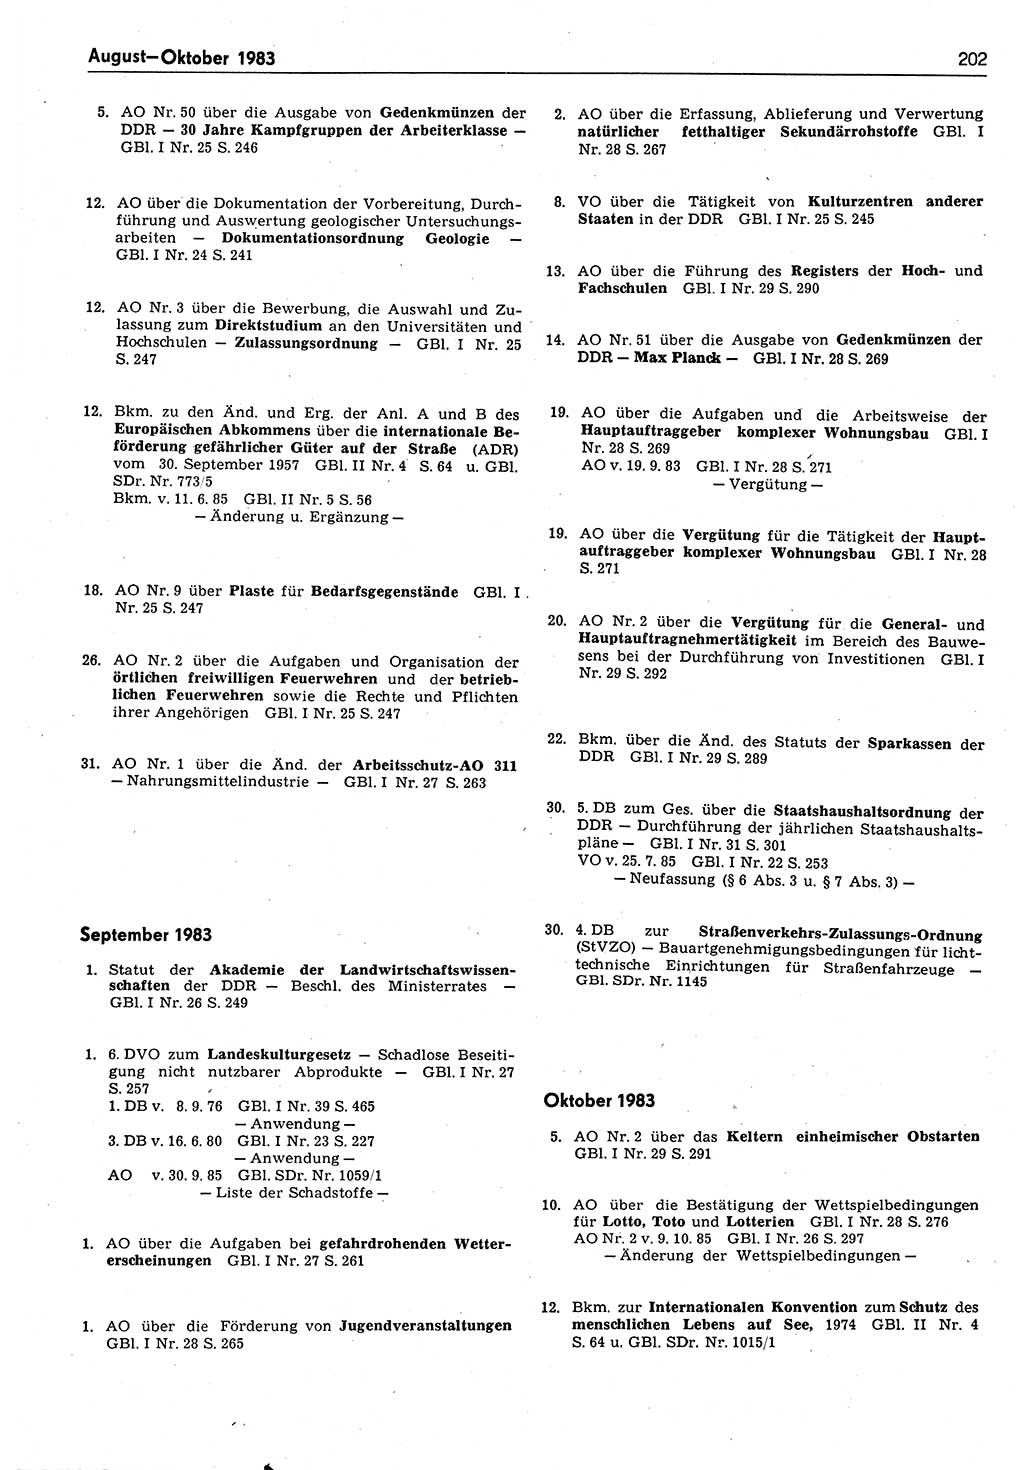 Das geltende Recht der Deutschen Demokratischen Republik (DDR) 1949-1988, Seite 202 (Gelt. R. DDR 1949-1988, S. 202)